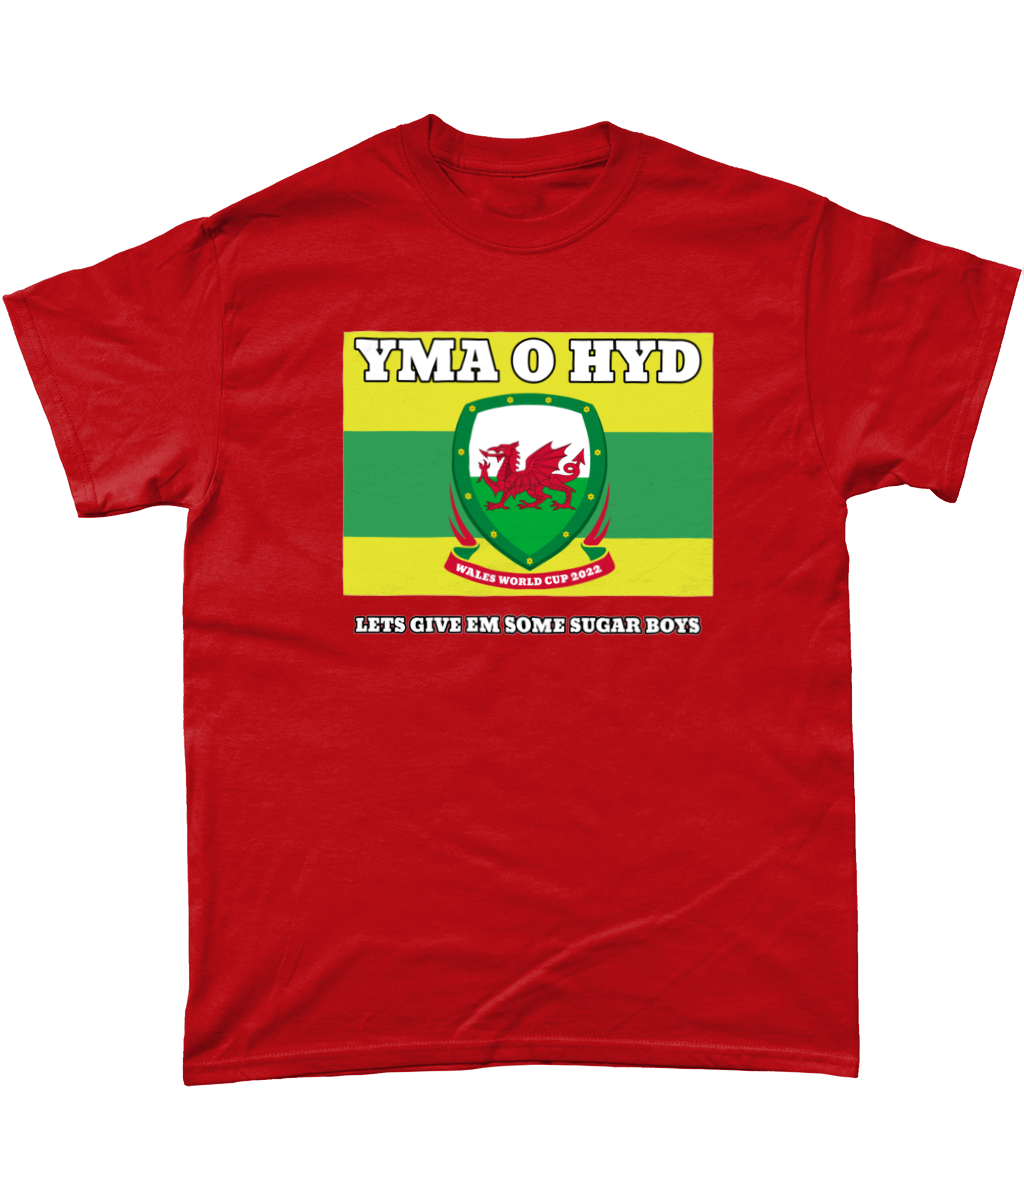 Yma O Hyd Give Em Some Sugar T Shirt